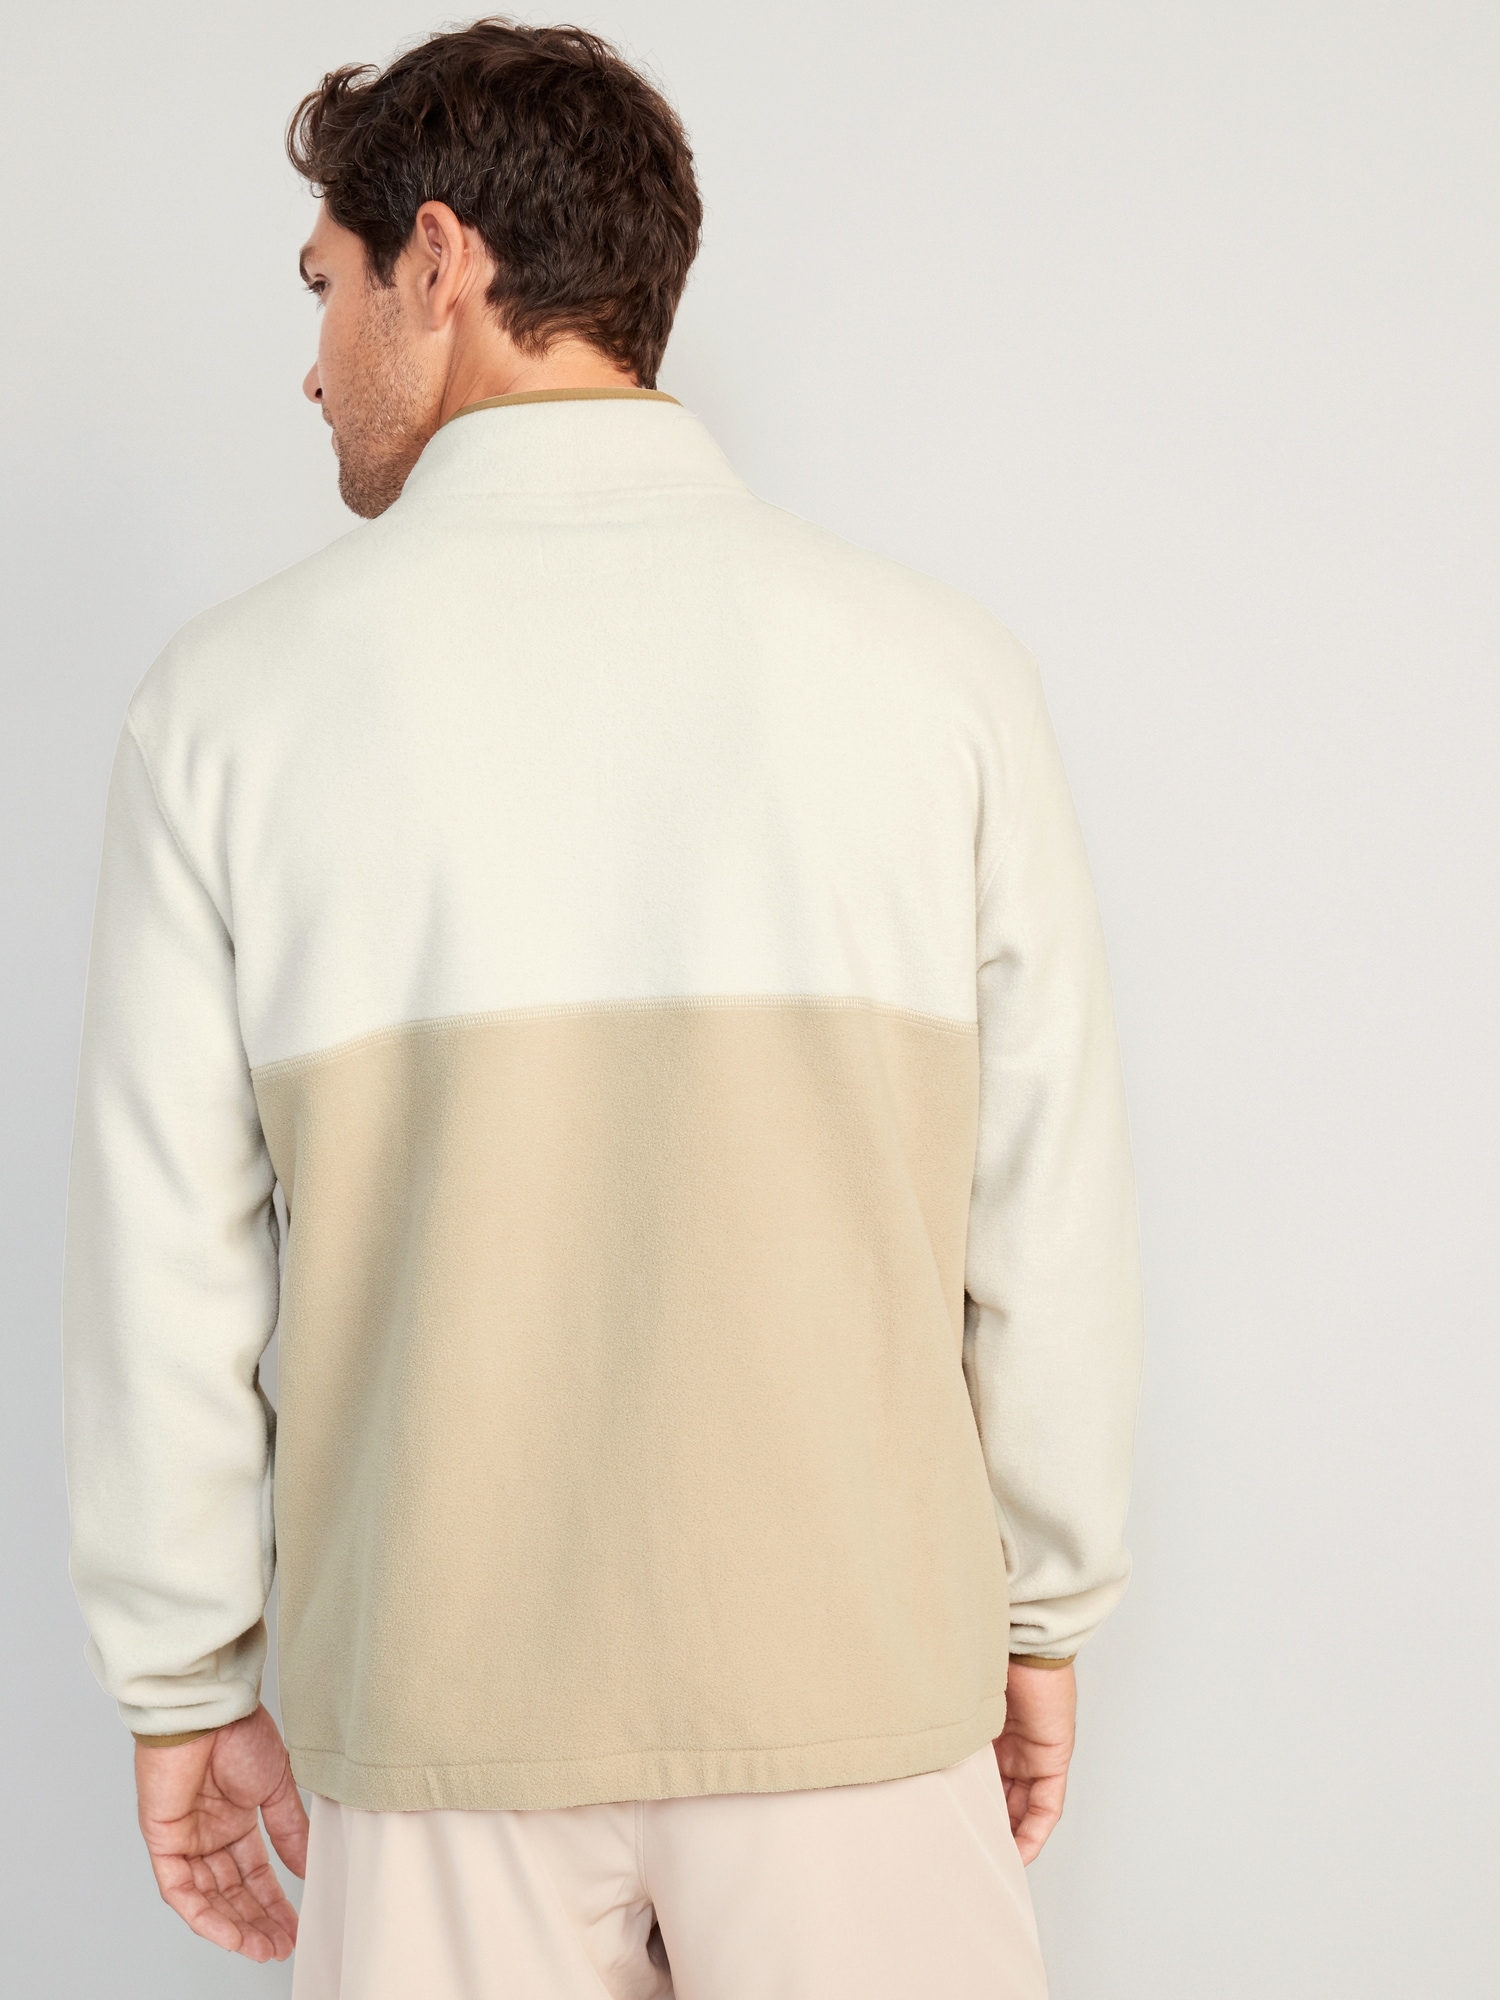 Micro-Fleece Old Men Jacket Navy Zip | for Oversized